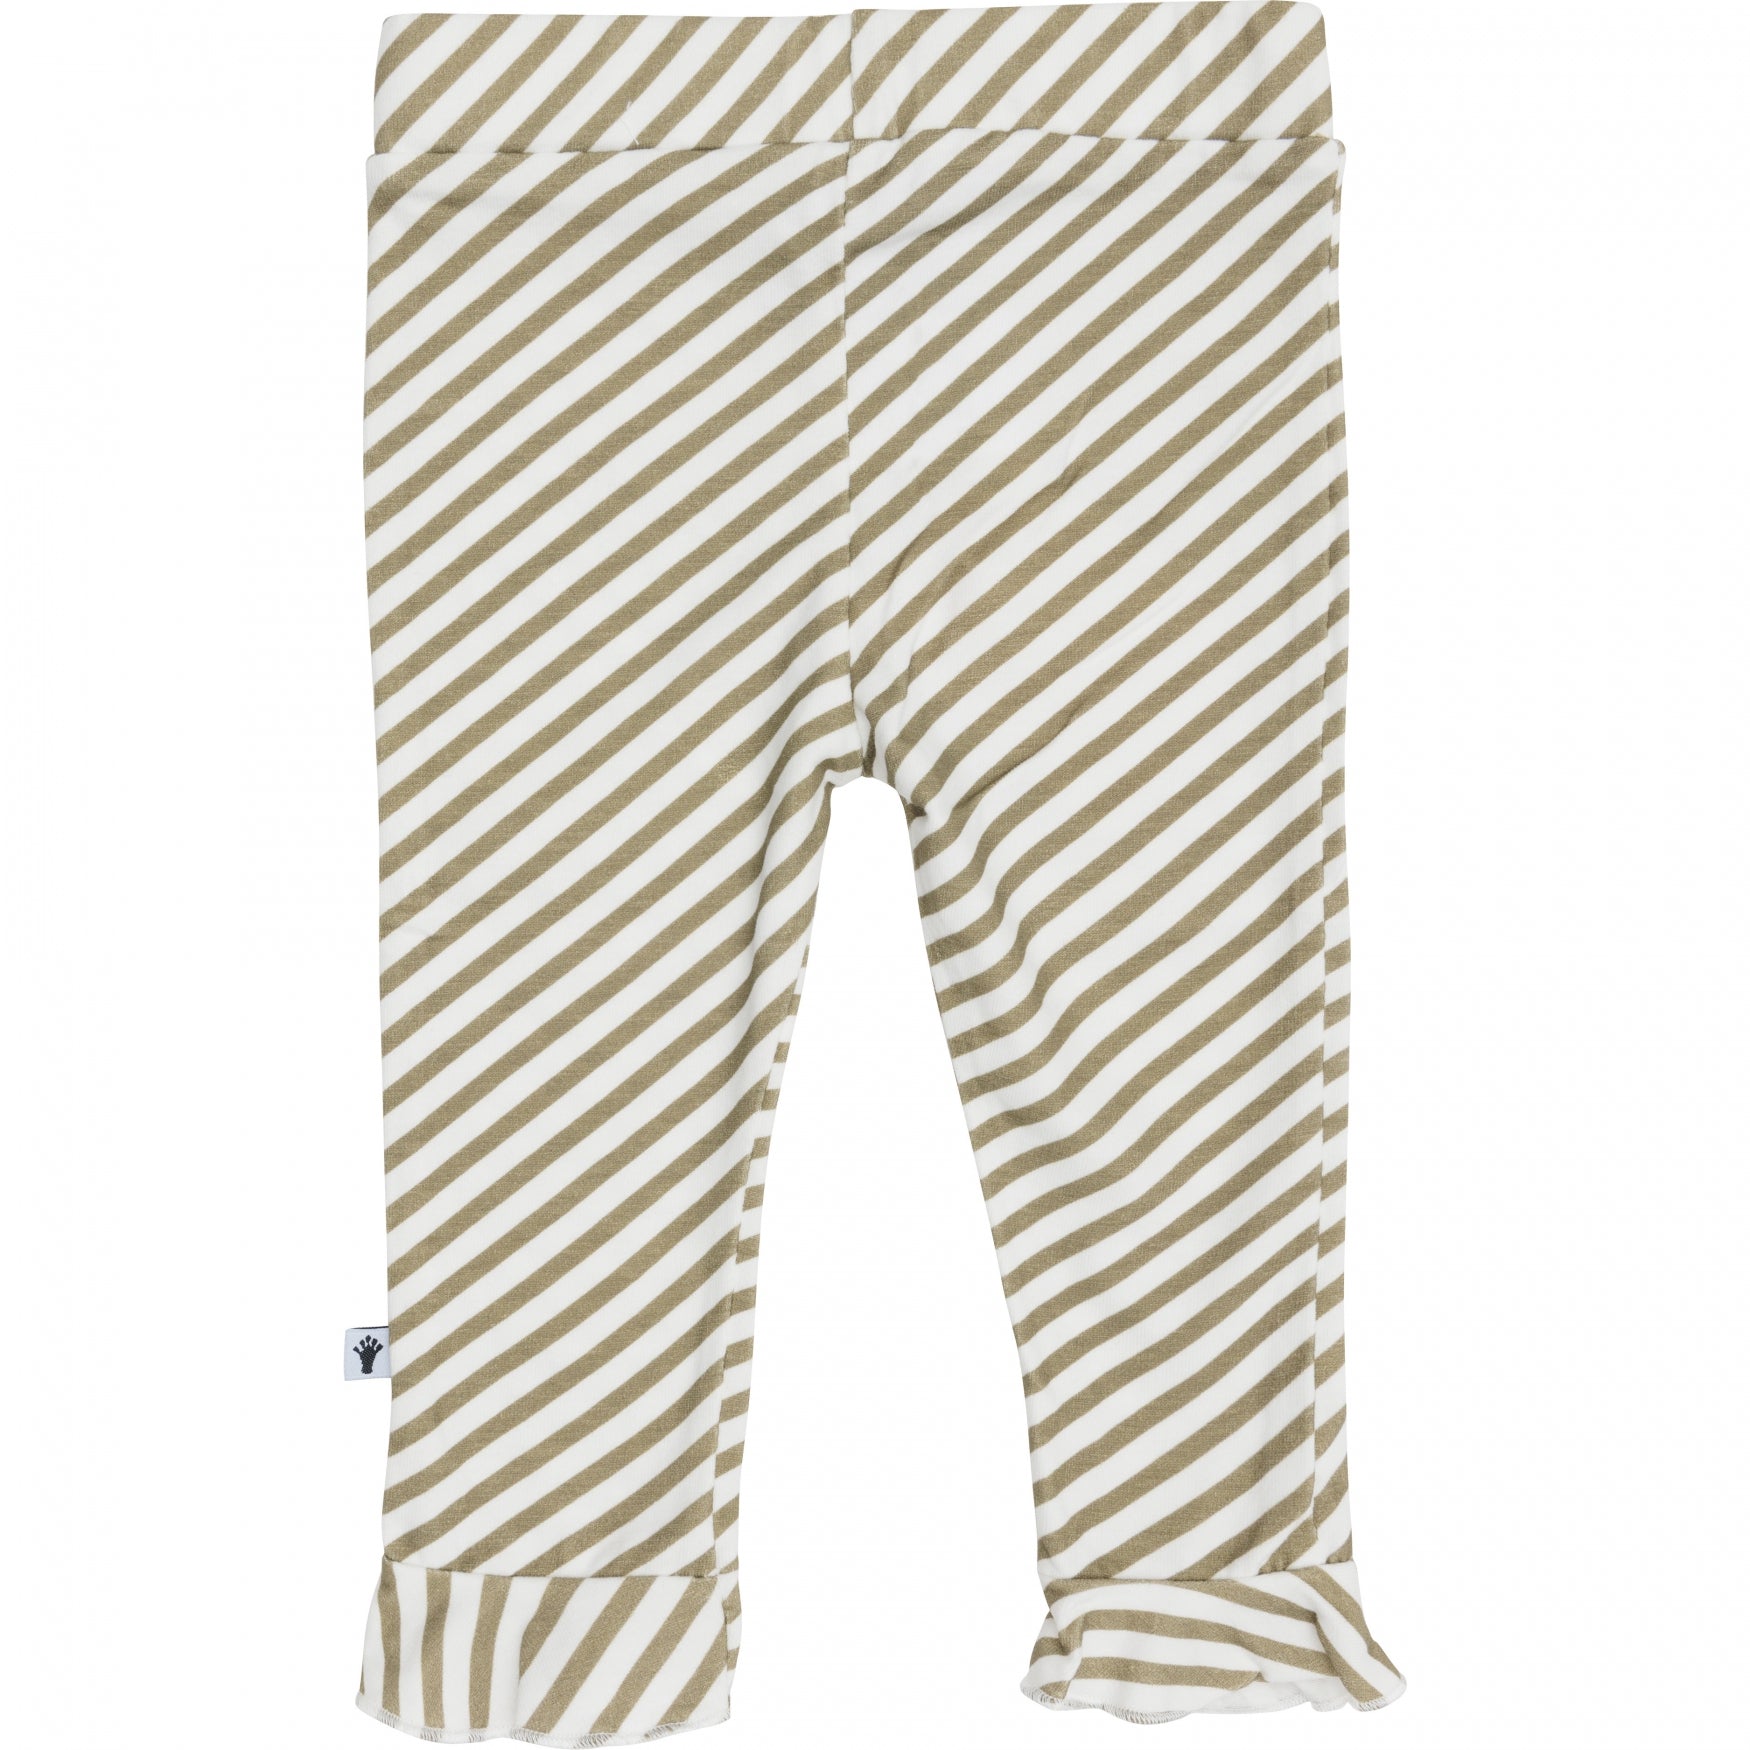 Meisjes Trouser Ruffle van Klein Baby in de kleur Stripe Off White/Twill in maat 74.